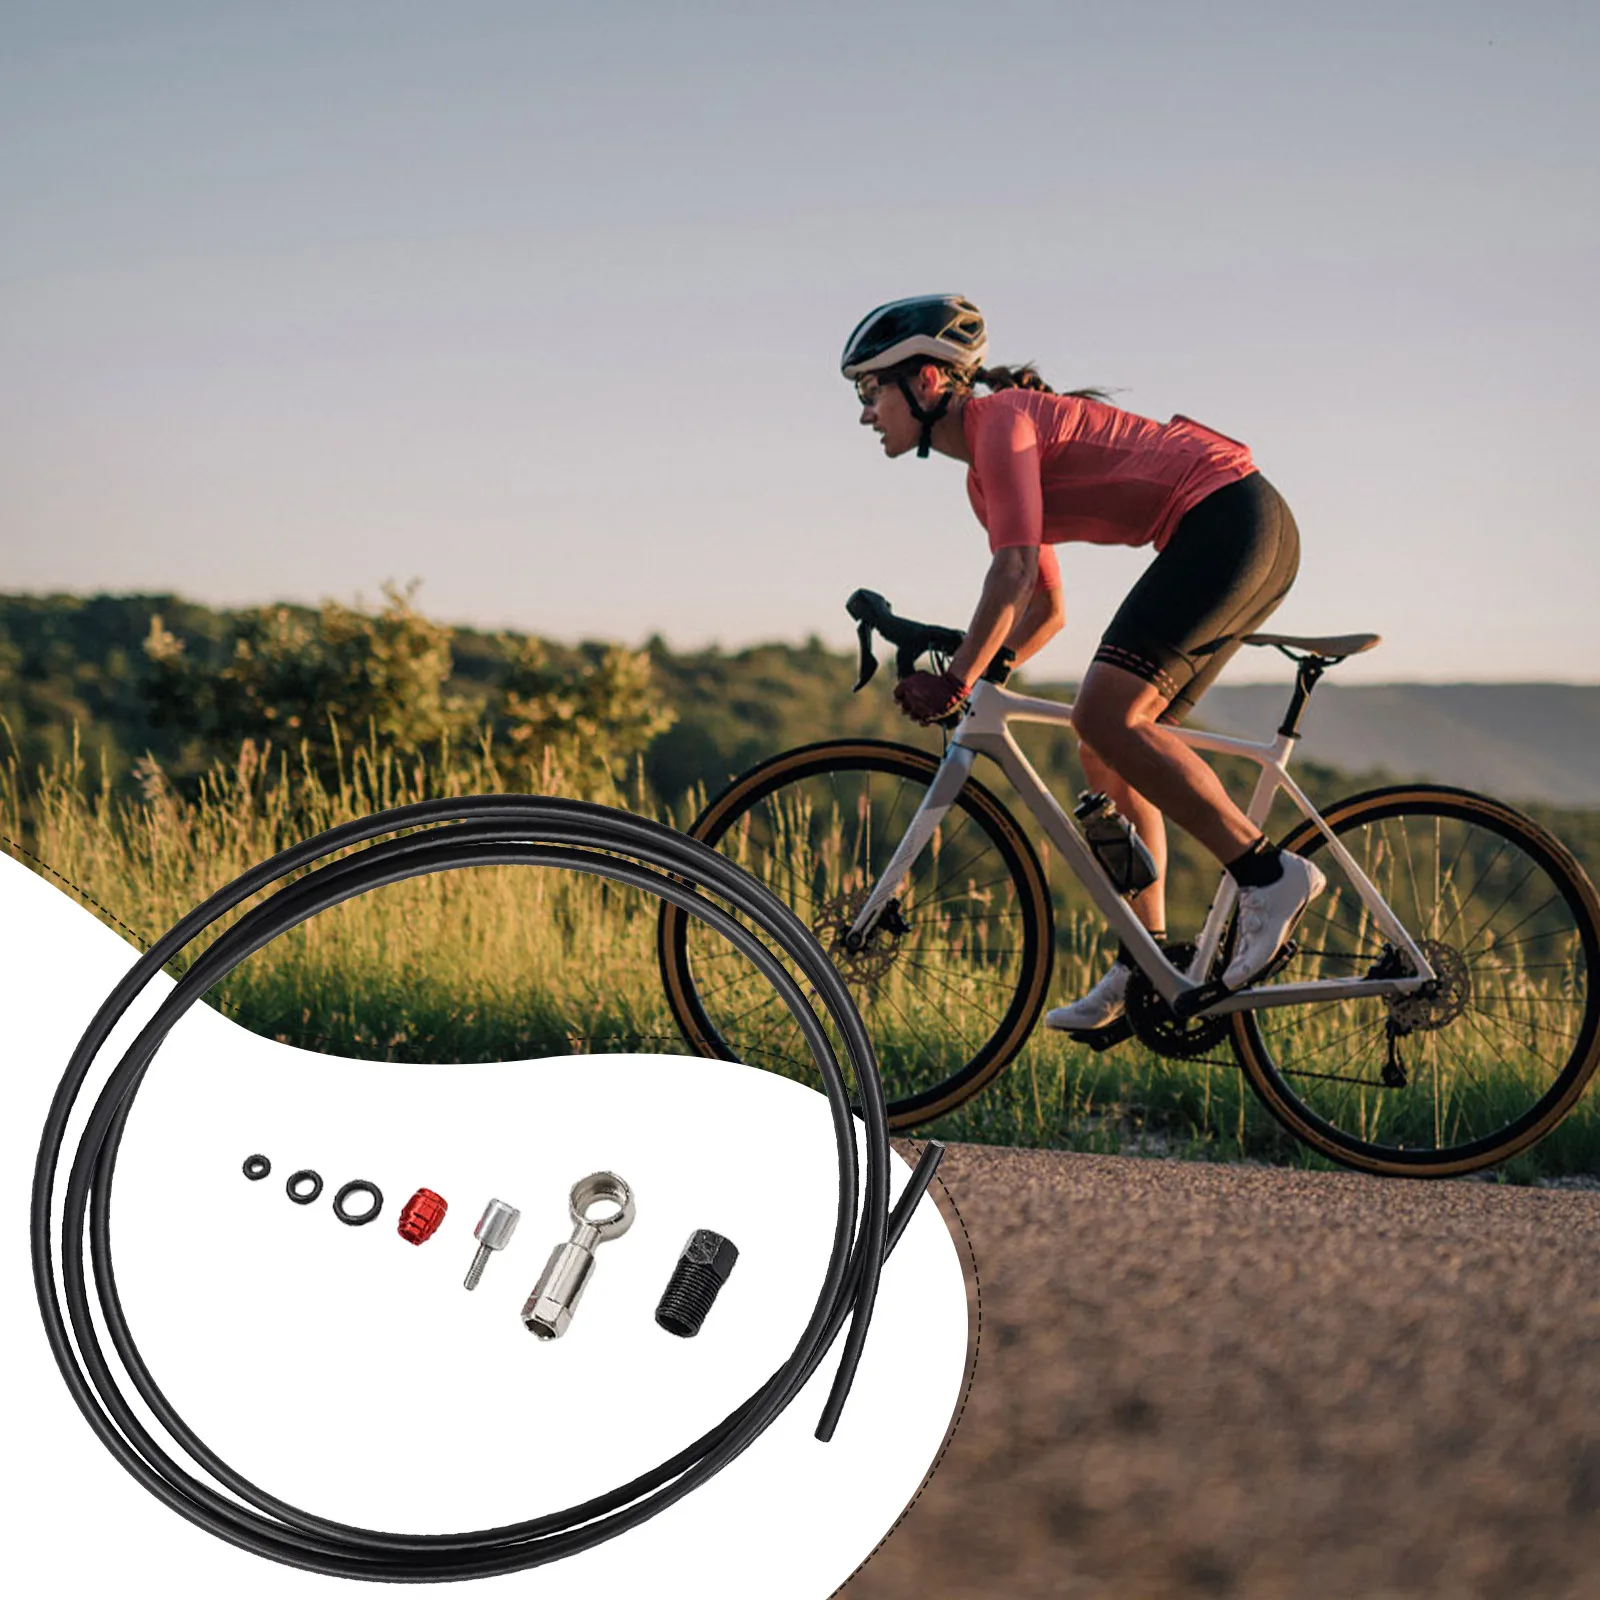 

Велосипедный комплект тормозного шланга длиной 2 метра, подходит для Sram-CODE RSC R, комплект коннекторов для велосипеда уровня, линейная трубка, масляные иглы, комплекты запчастей для горных и дорожных велосипедов